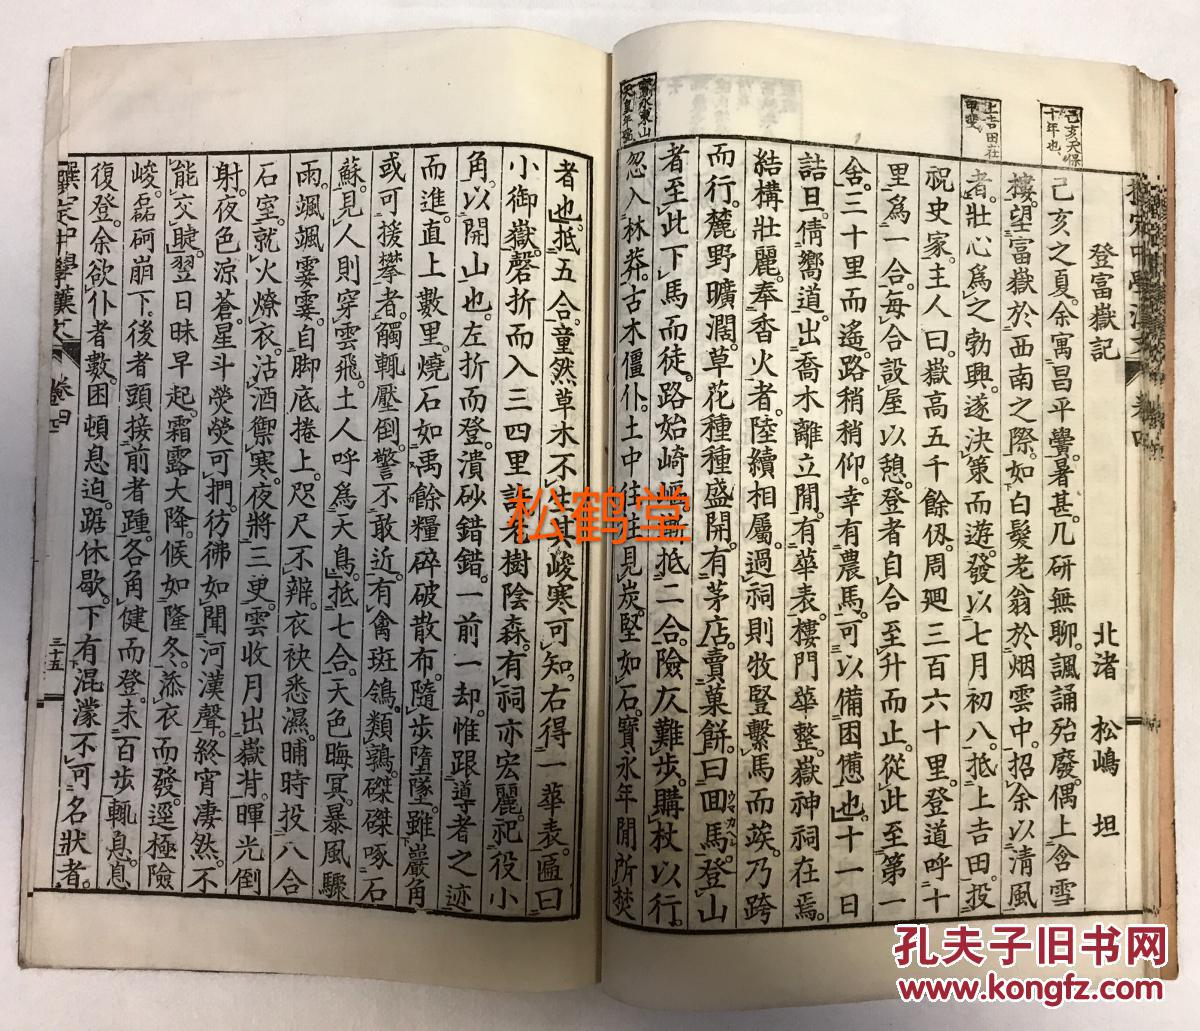 刻本,汉文,日本明治31年,1898年版,老教科书,收